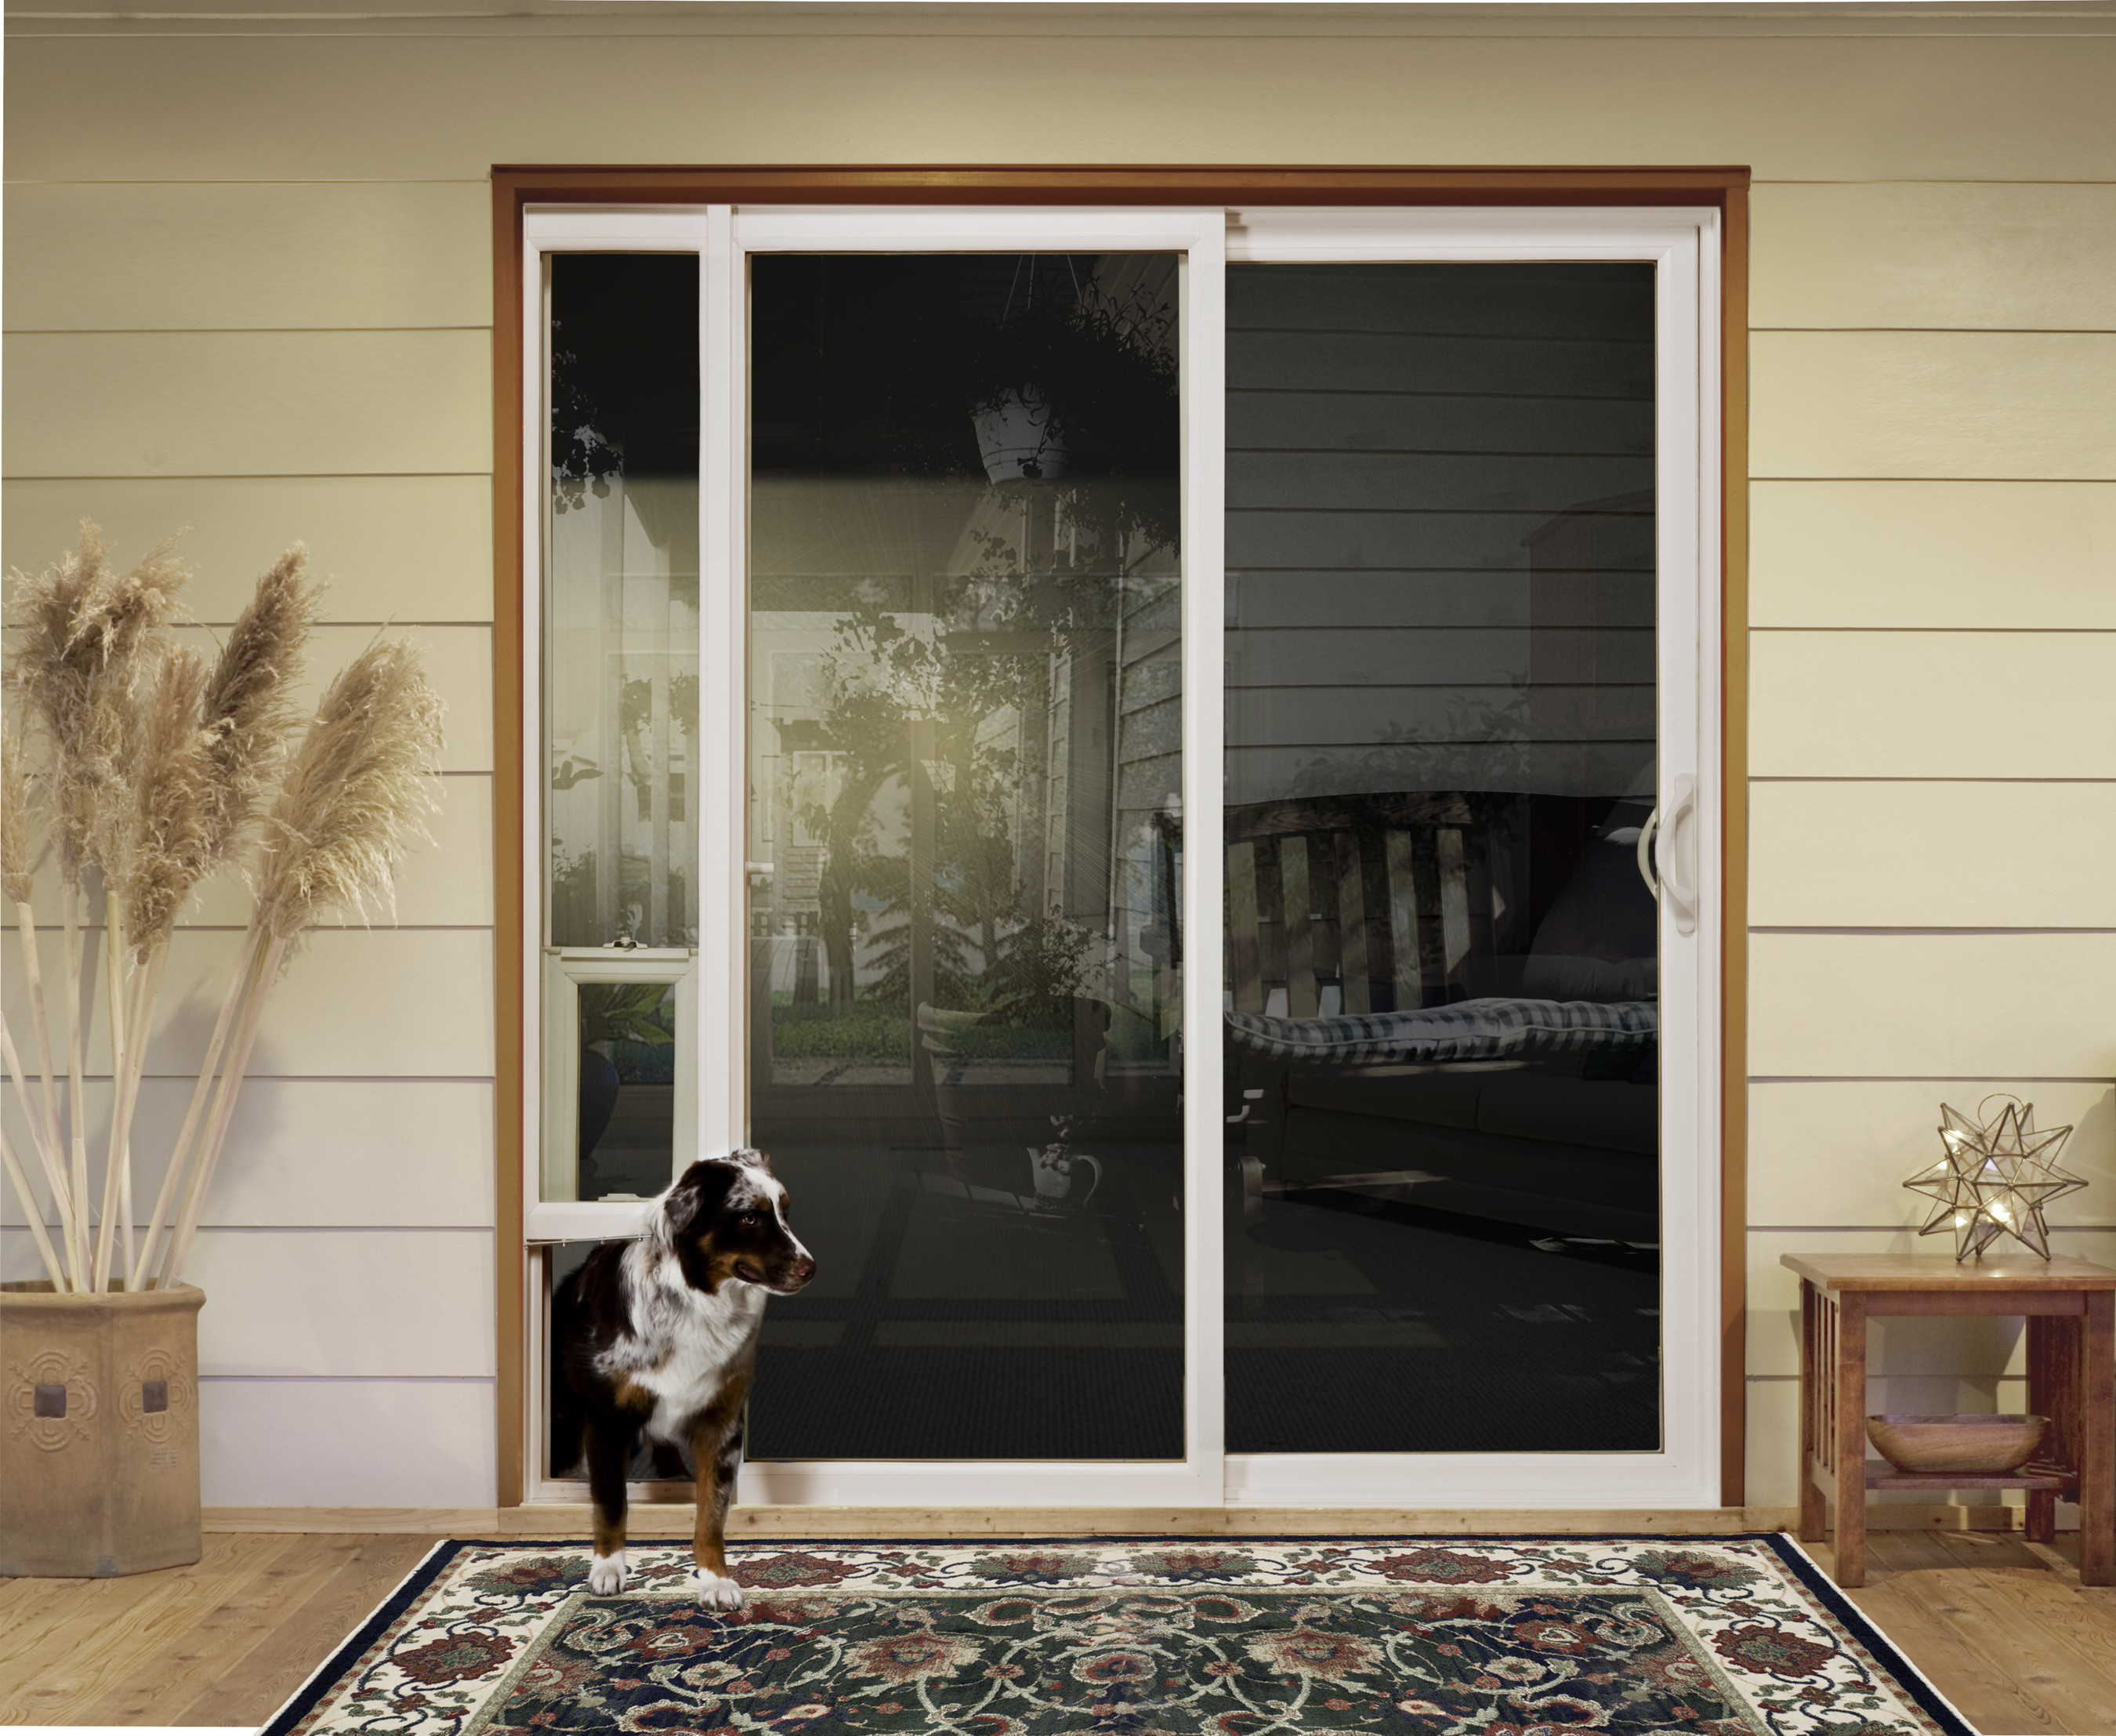 Best ideas about Patio Dog Door
. Save or Pin Pet Patio Door – Darcylea Design Now.